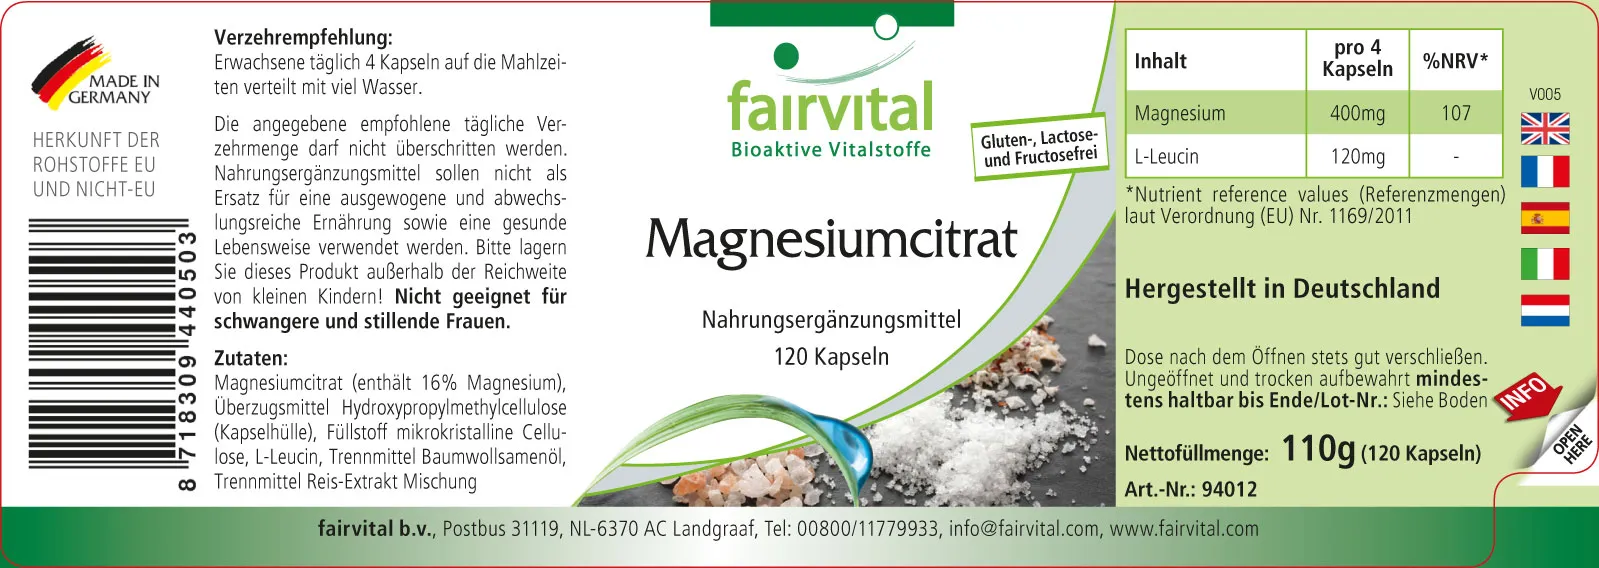 Magnesiumcitraat - 120 capsules